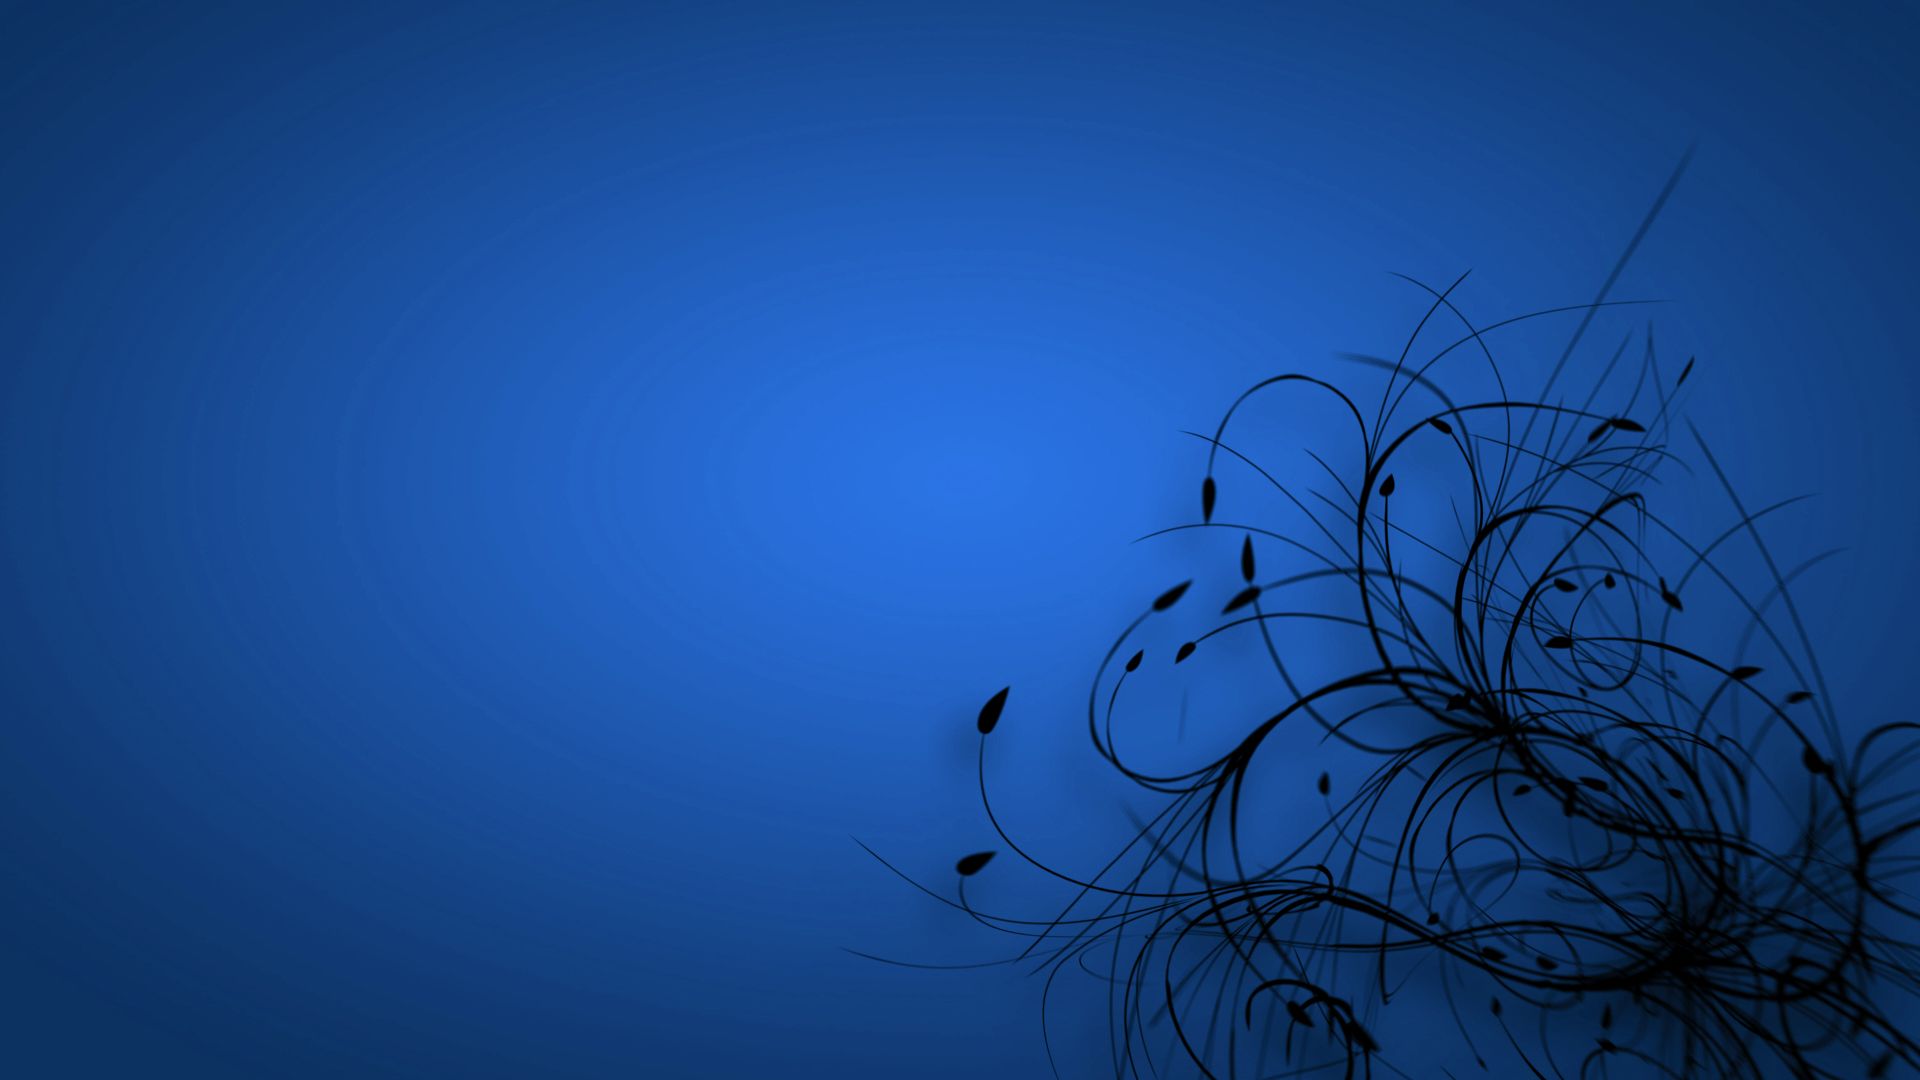 Free download Blue Color Desktop Background Wallpaper High